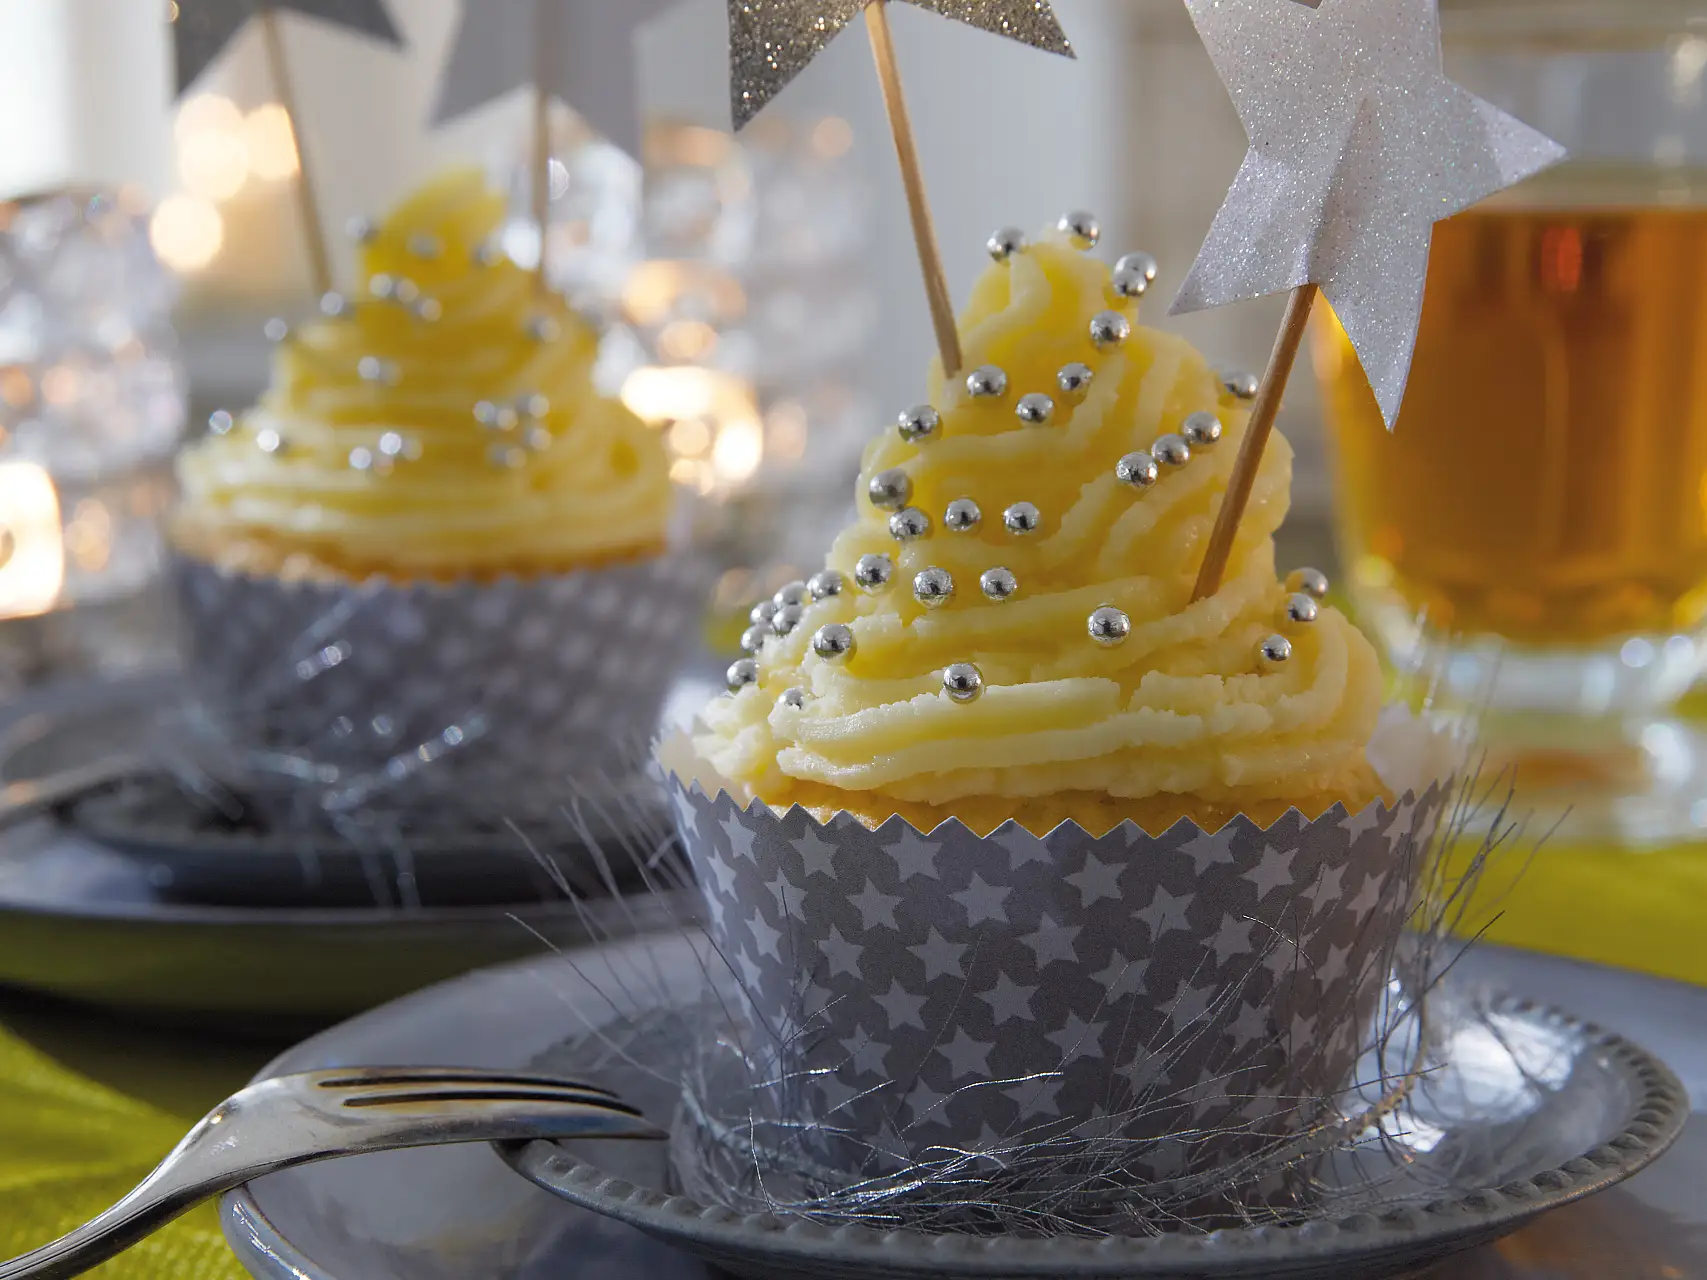 Die Cupcakes tragen ein festlich gemustertes Kleid. Passende Accessoires dazu: Deko-Sticks mit glitzernden Sternen.